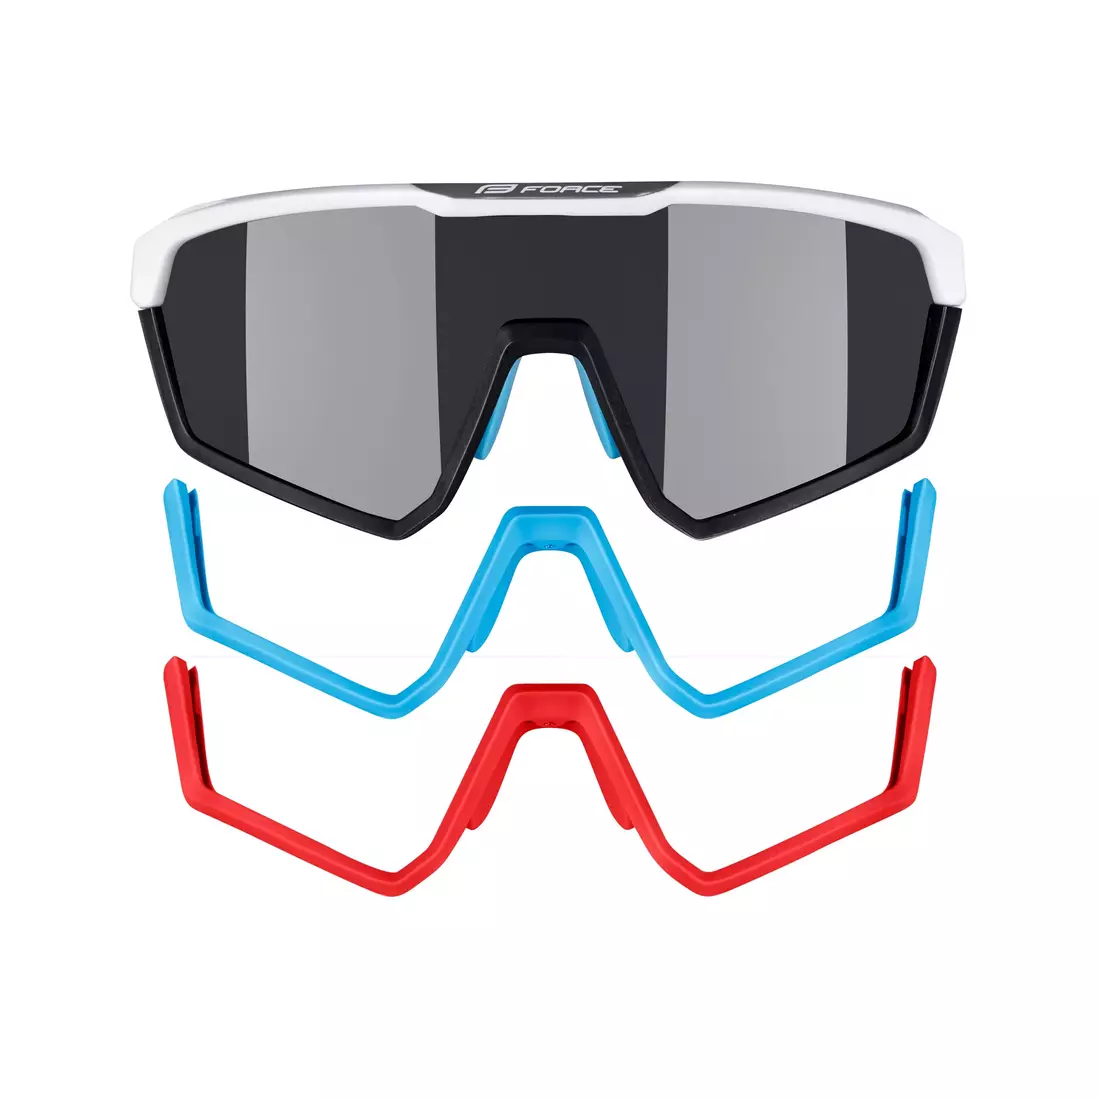 FORCE kerékpáros / sport szemüveg APEX, fehér és szürke, 910891